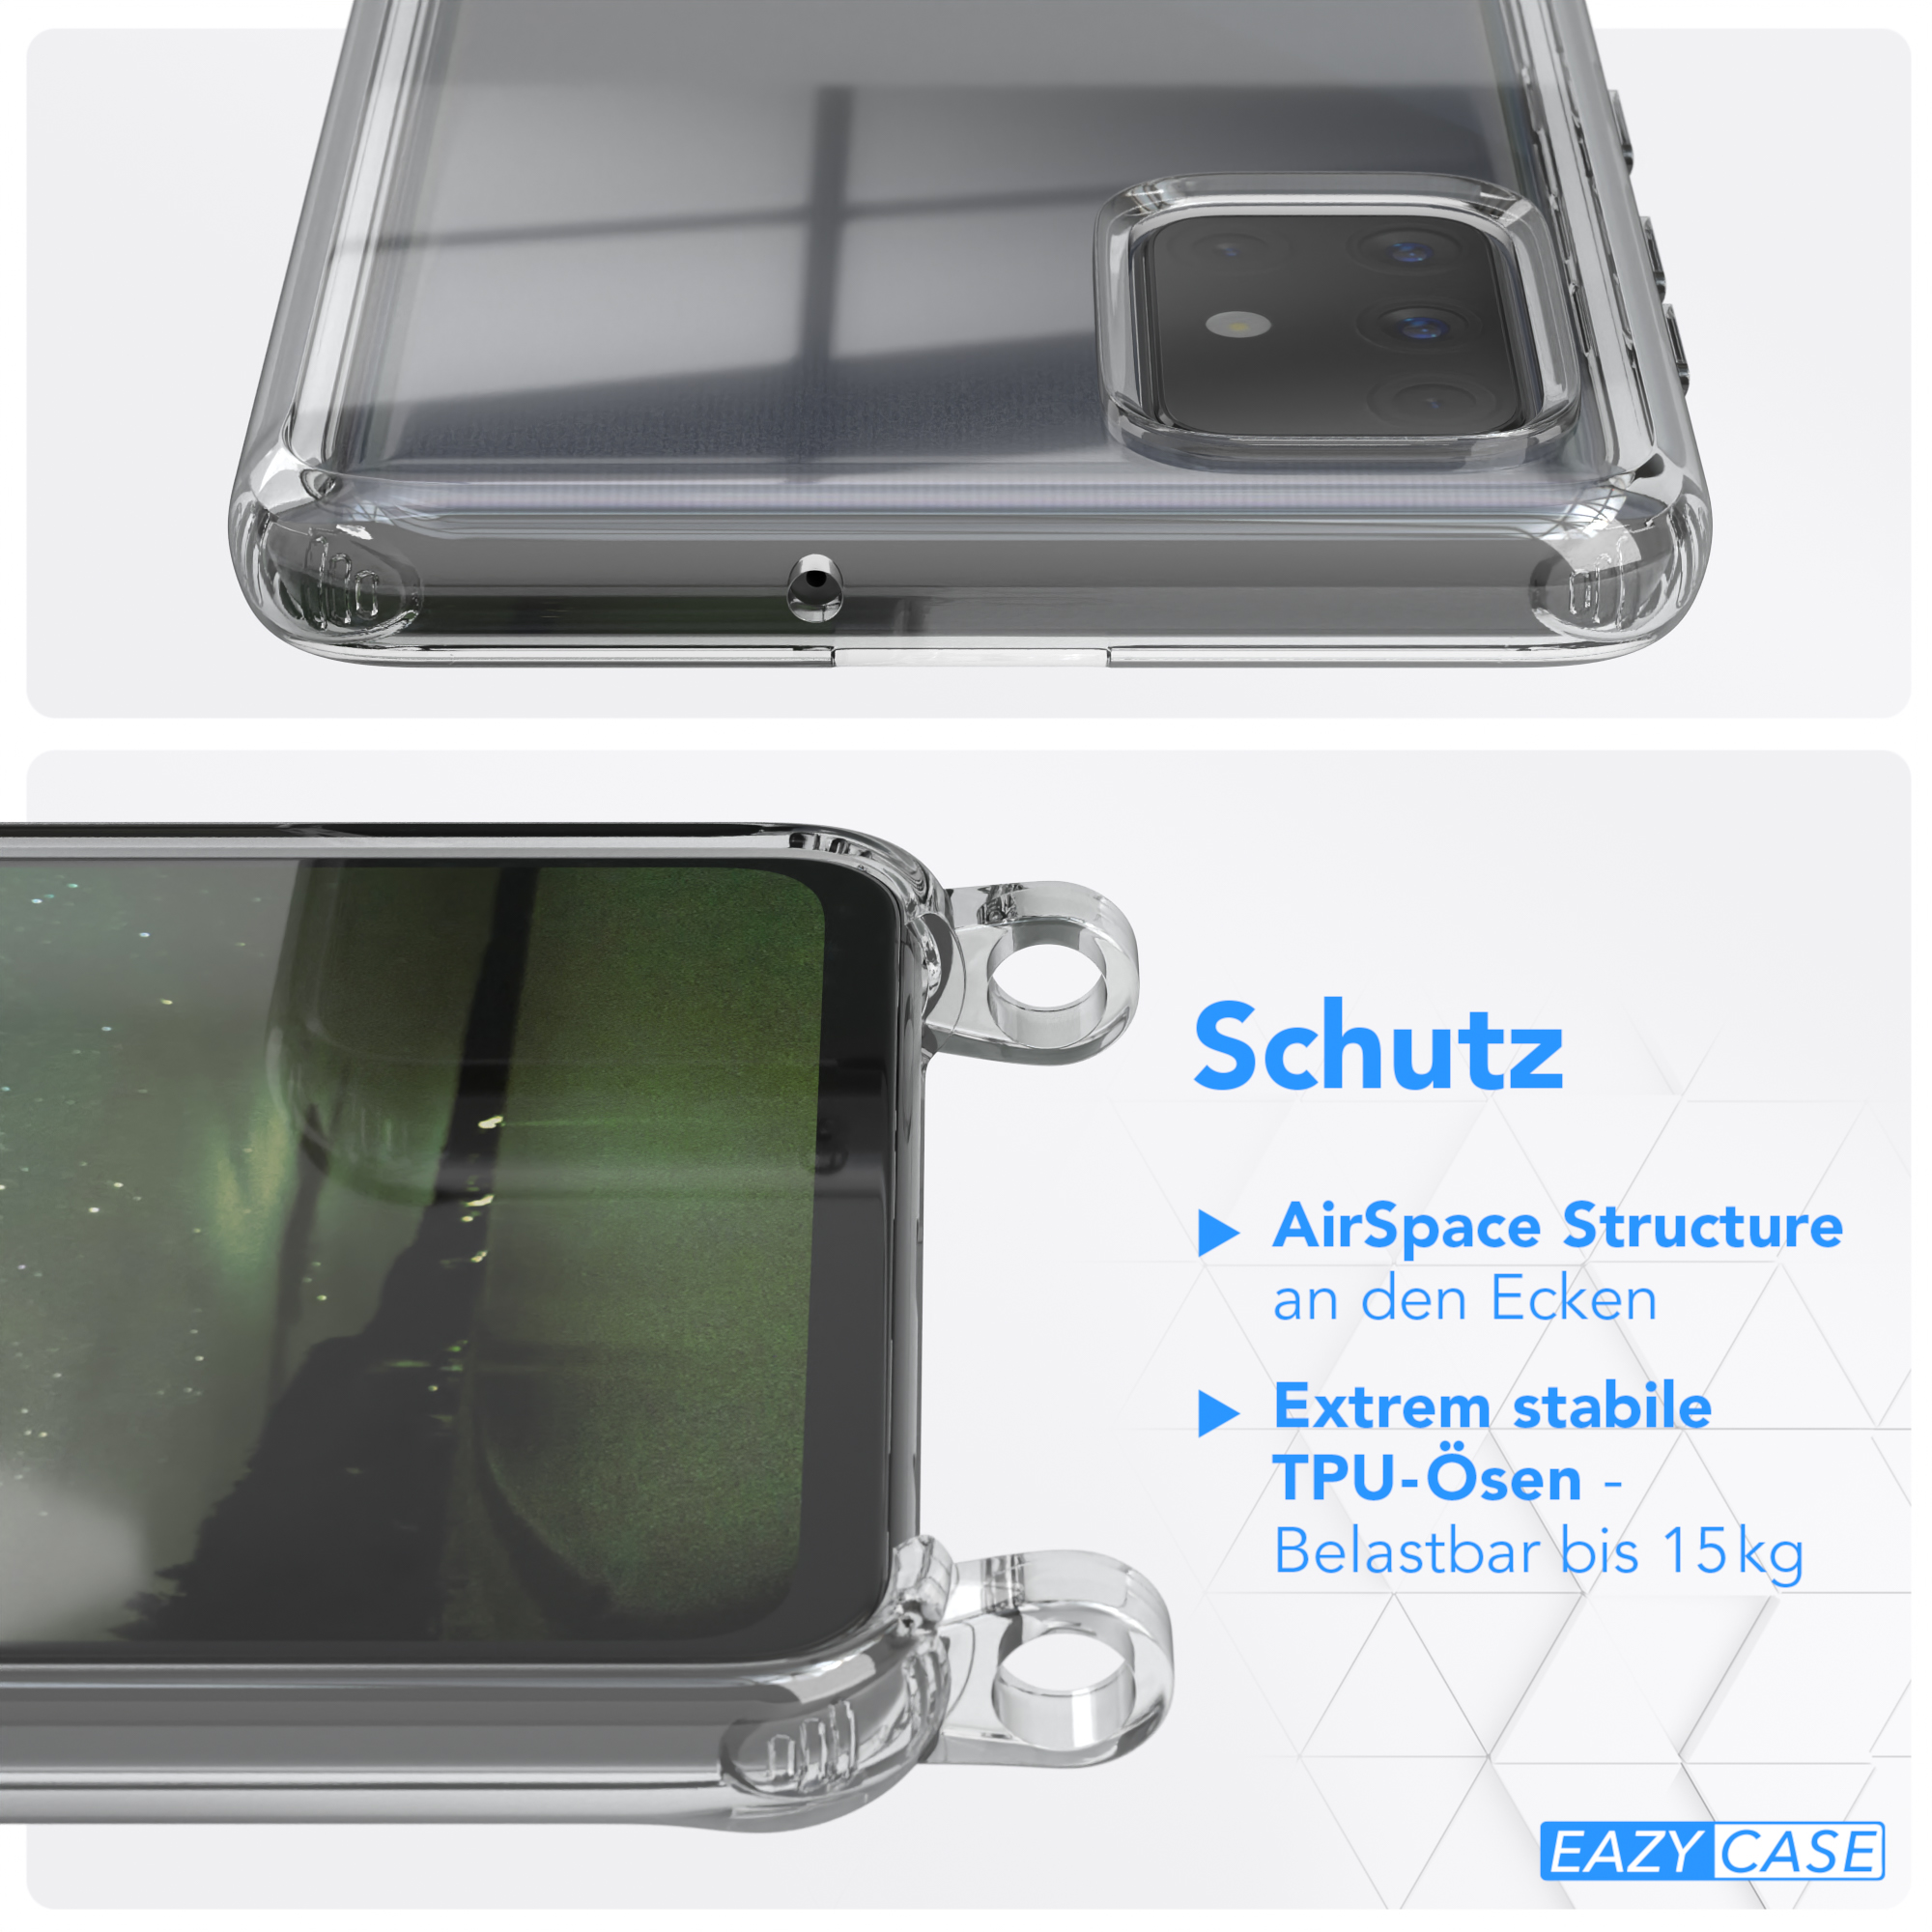 EAZY CASE unifarbend, Galaxy runder Samsung, Handyhülle mit Dunkelgrün Transparente Nachtgrün A71, Kette Umhängetasche, 